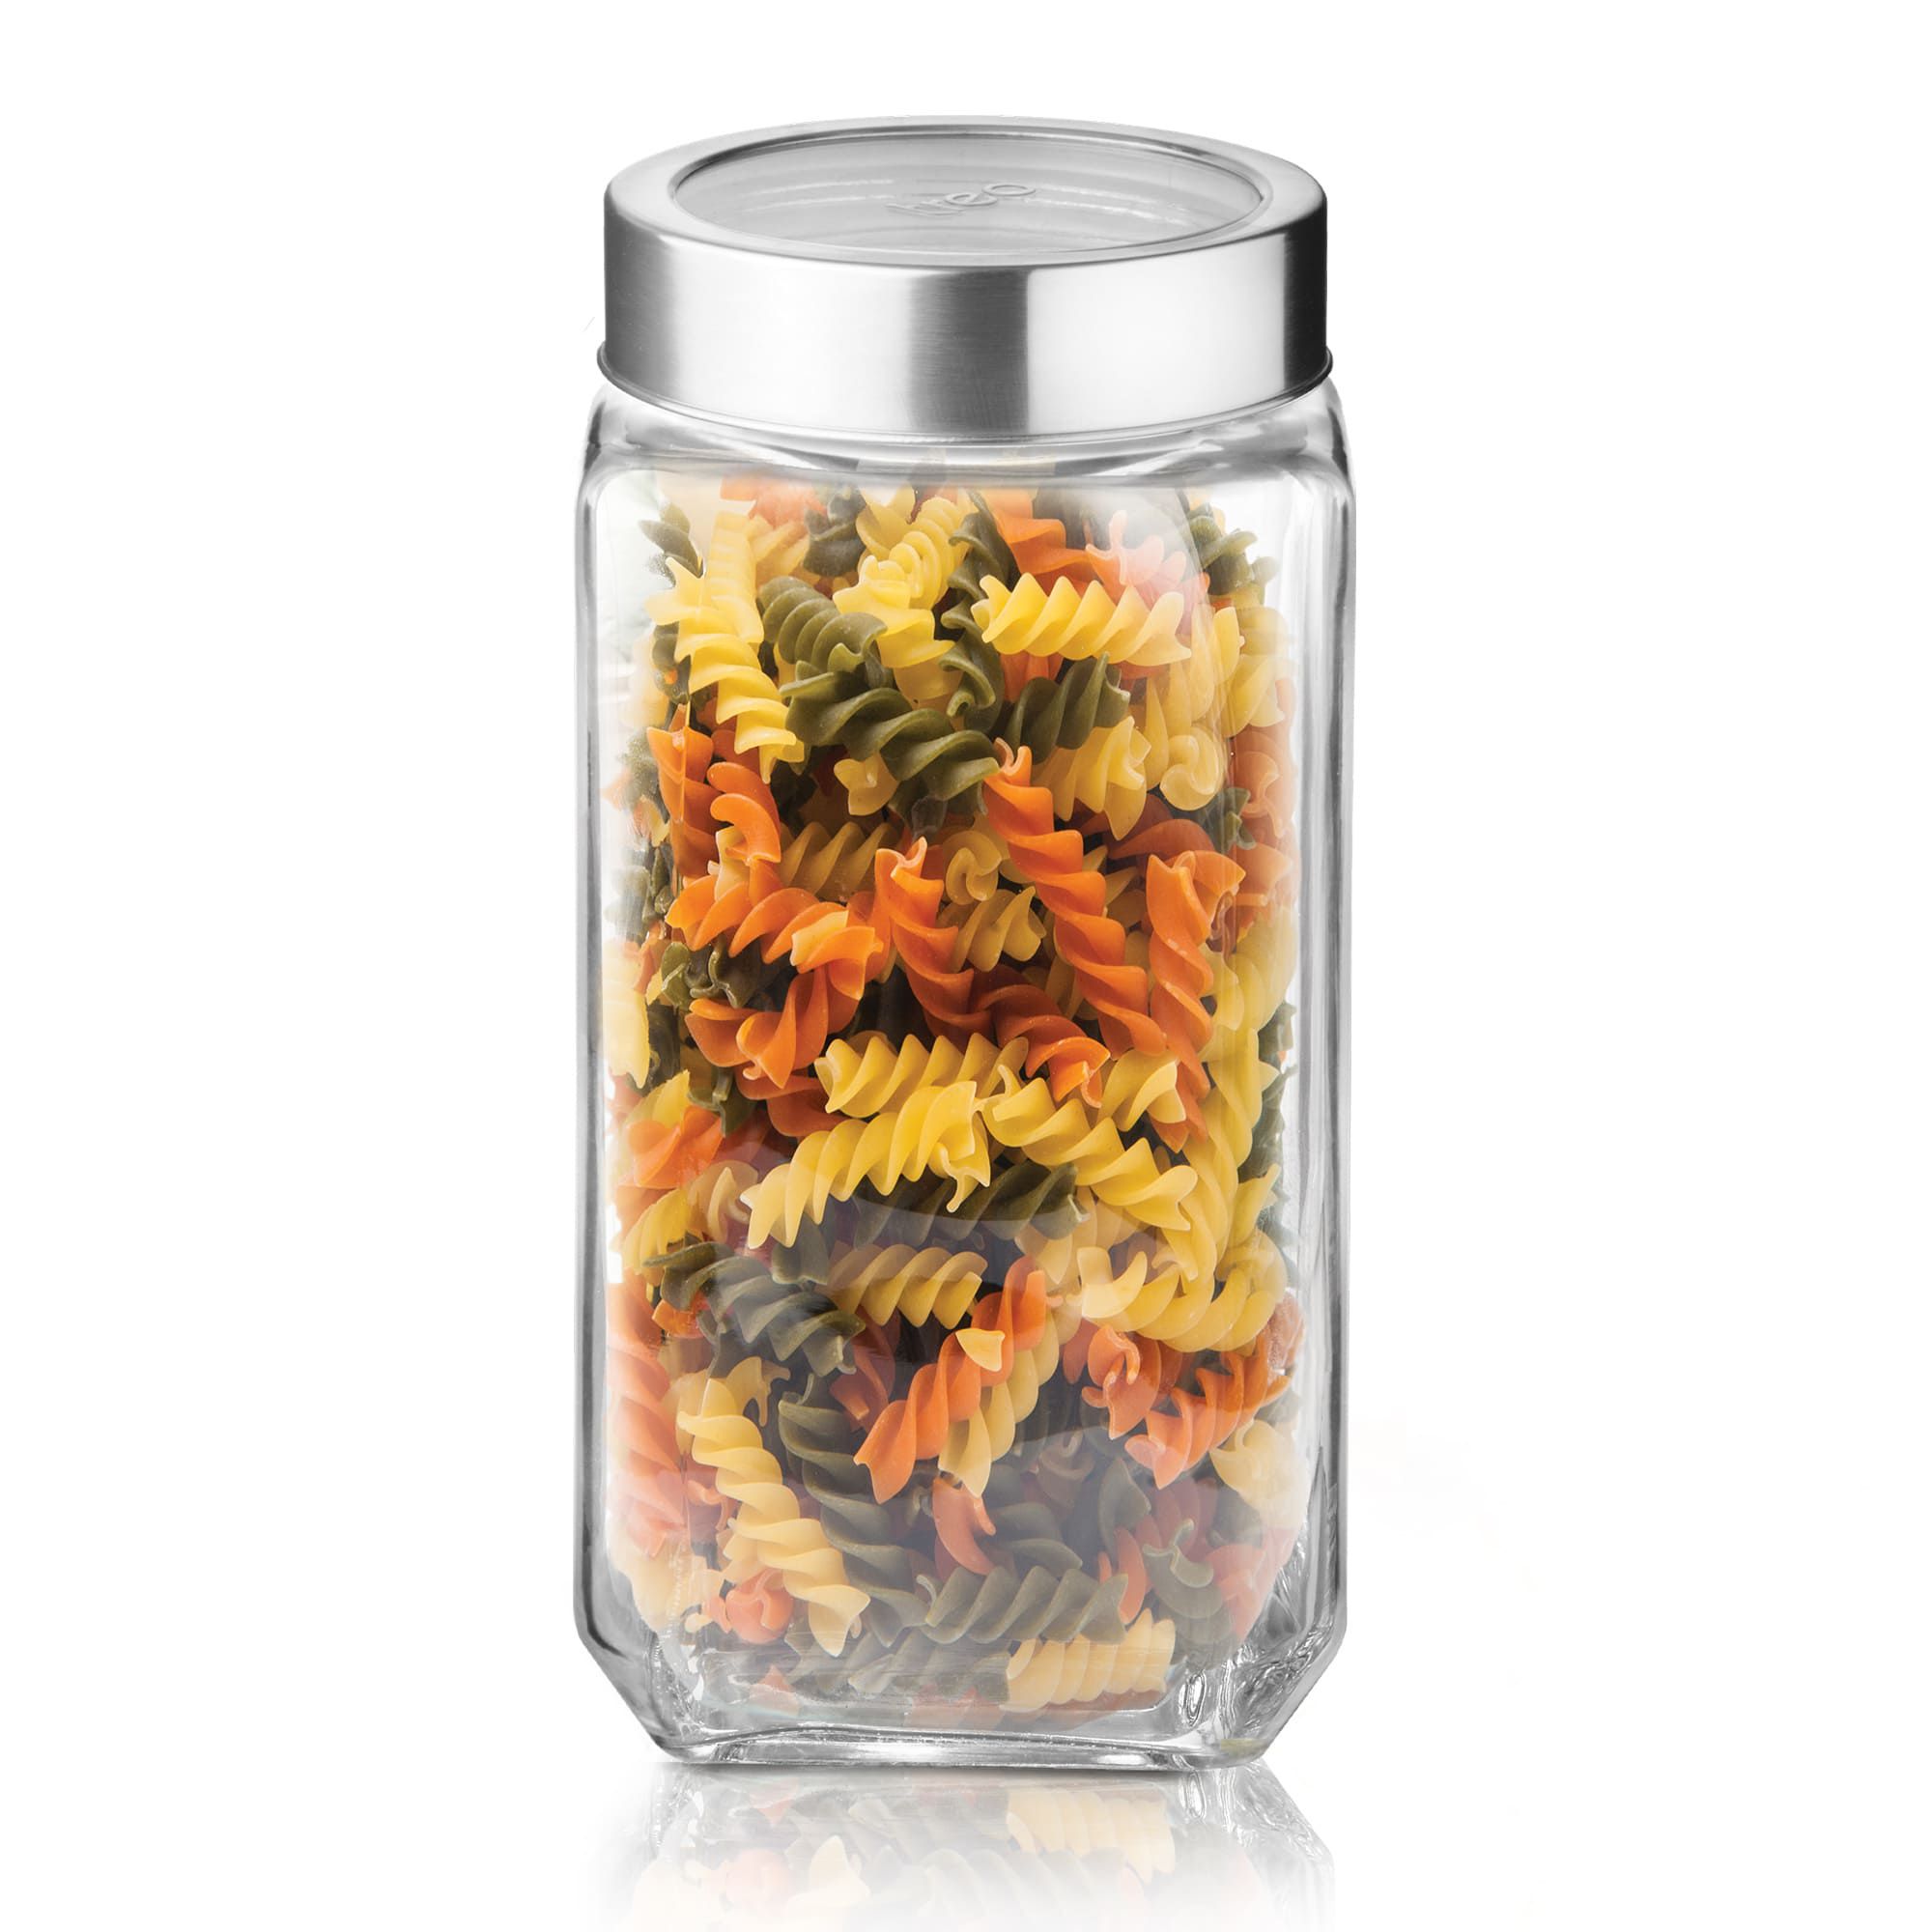     			Treo By Milton Cube Storage Glass Jar, 1 Piece, 1000 ml, Transparent